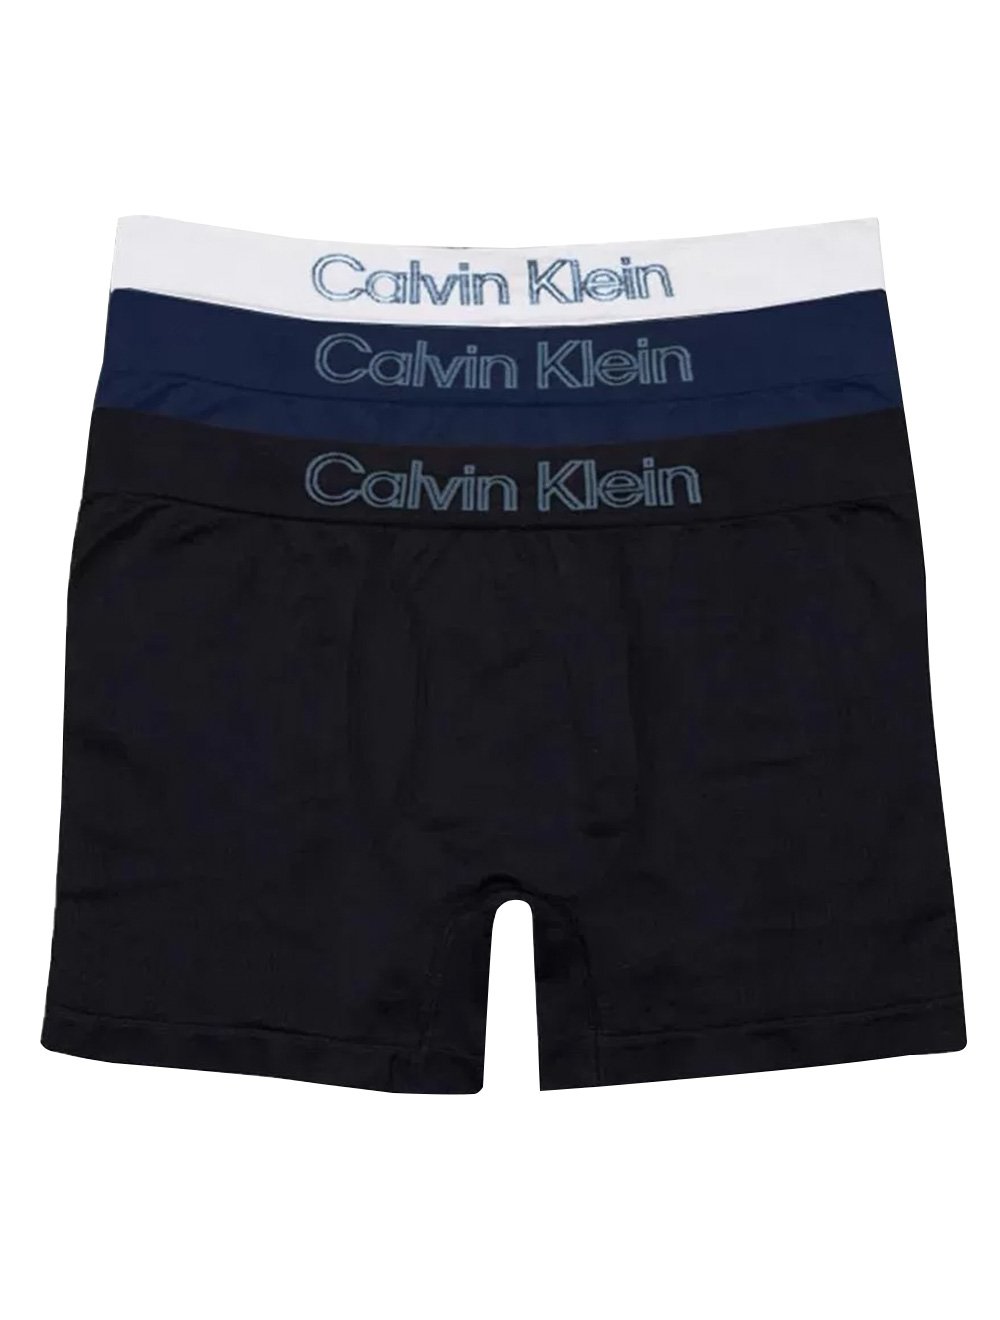 Cueca Calvin Klein Underwear Jockstrap Preta - Compre Agora